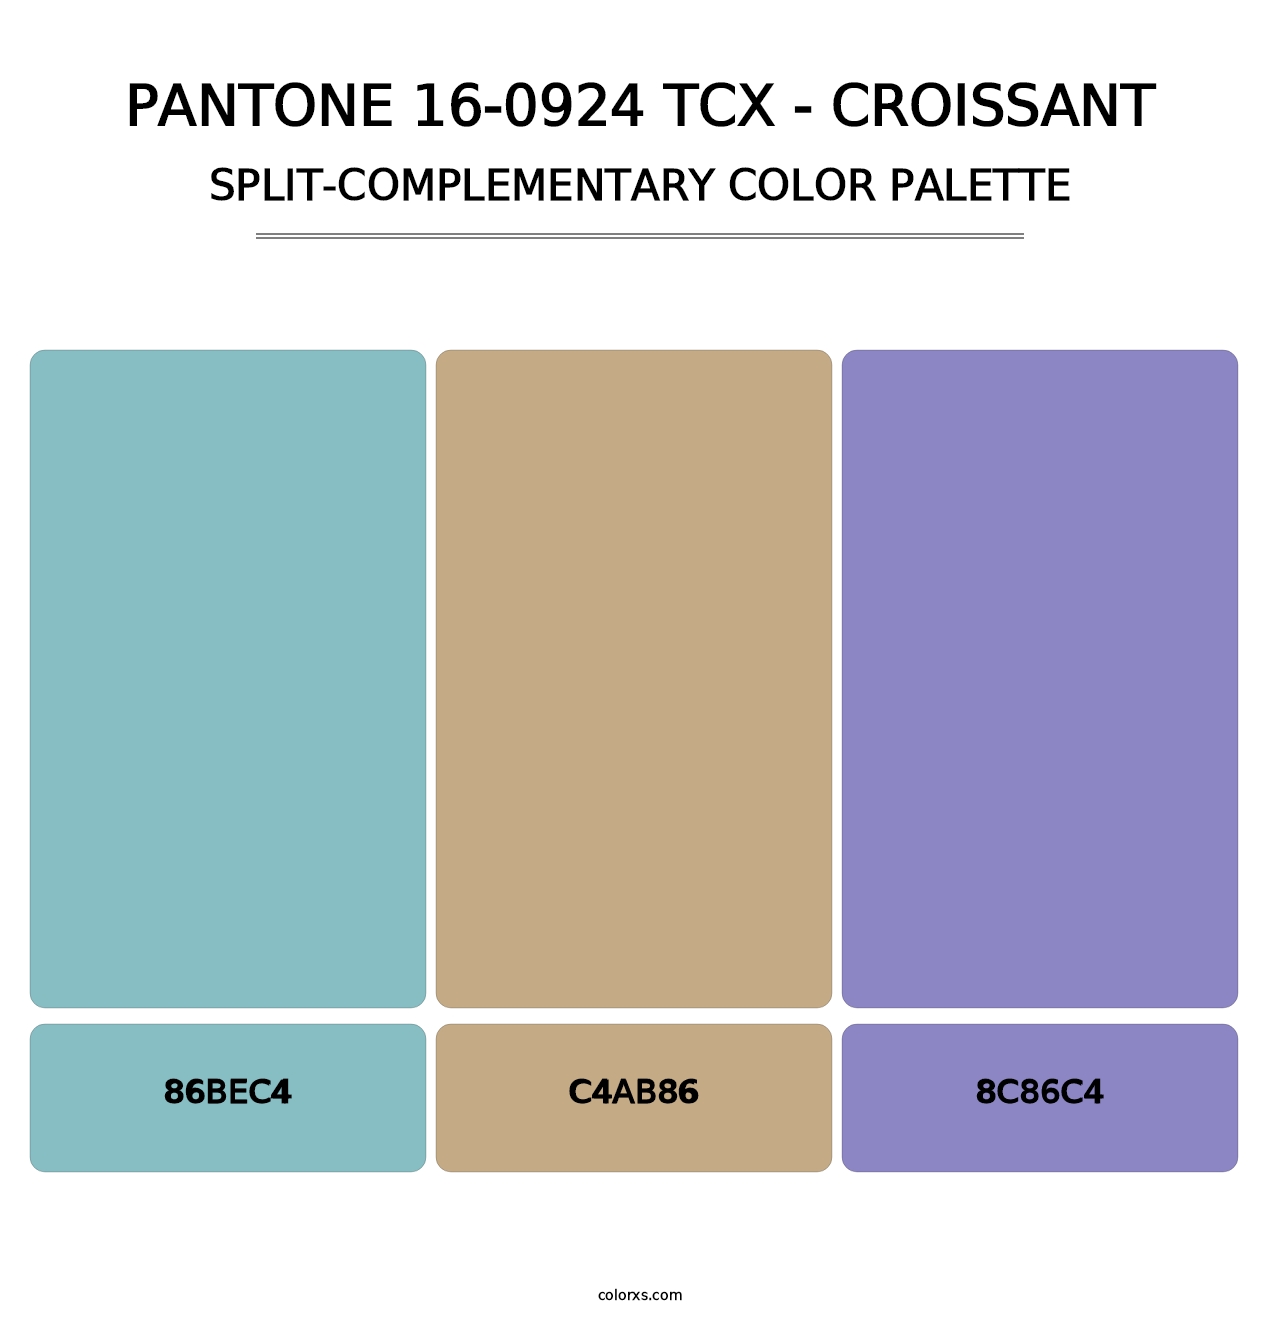 PANTONE 16-0924 TCX - Croissant - Split-Complementary Color Palette